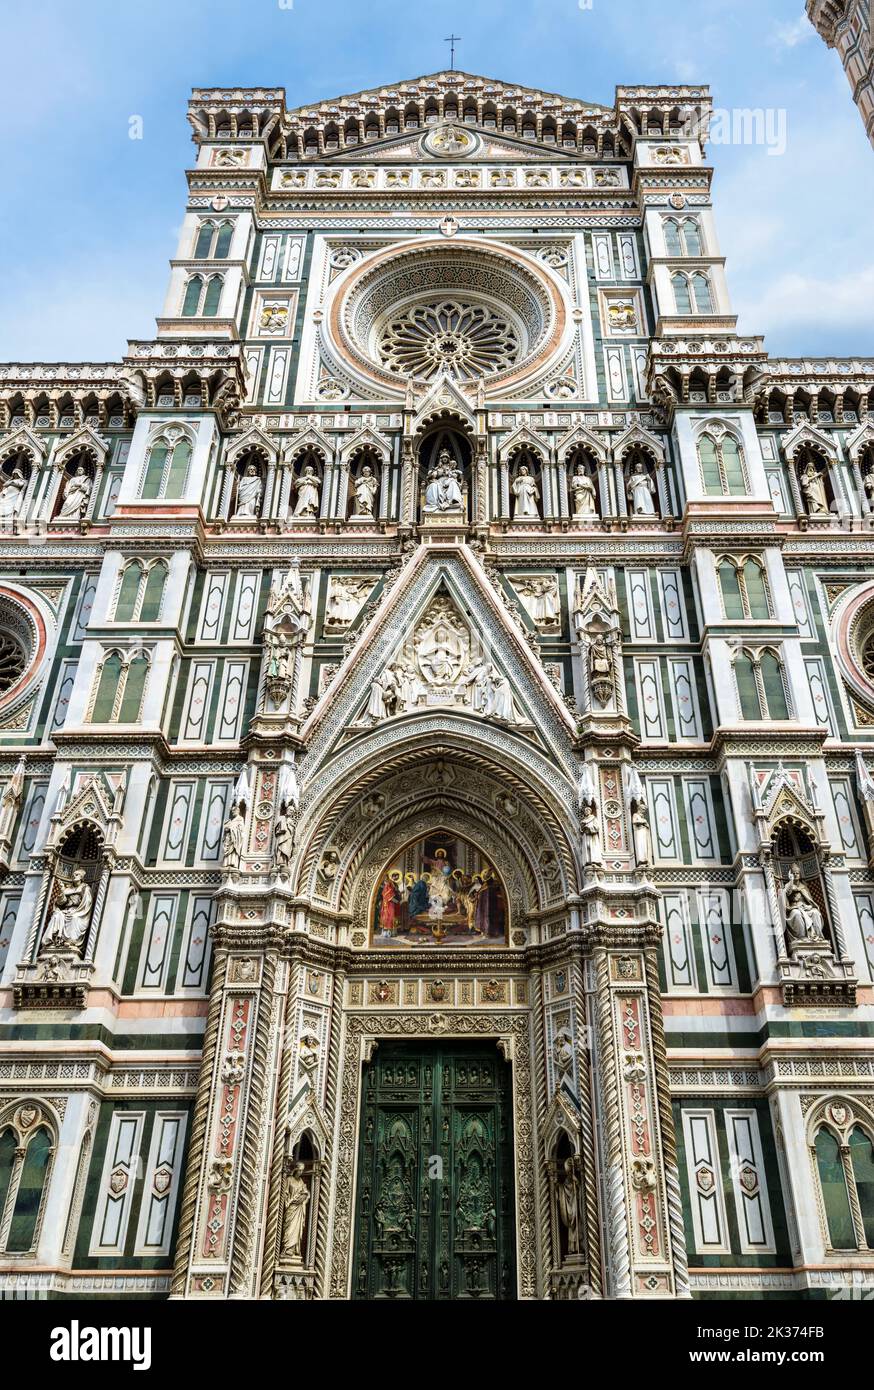 Duomo ou basilique de Santa Maria del Fiore, vue verticale, Florence, Italie. La cathédrale Sainte-Marie-de-Fleur est le point de repère de Florence. Thème de l'ornat Banque D'Images